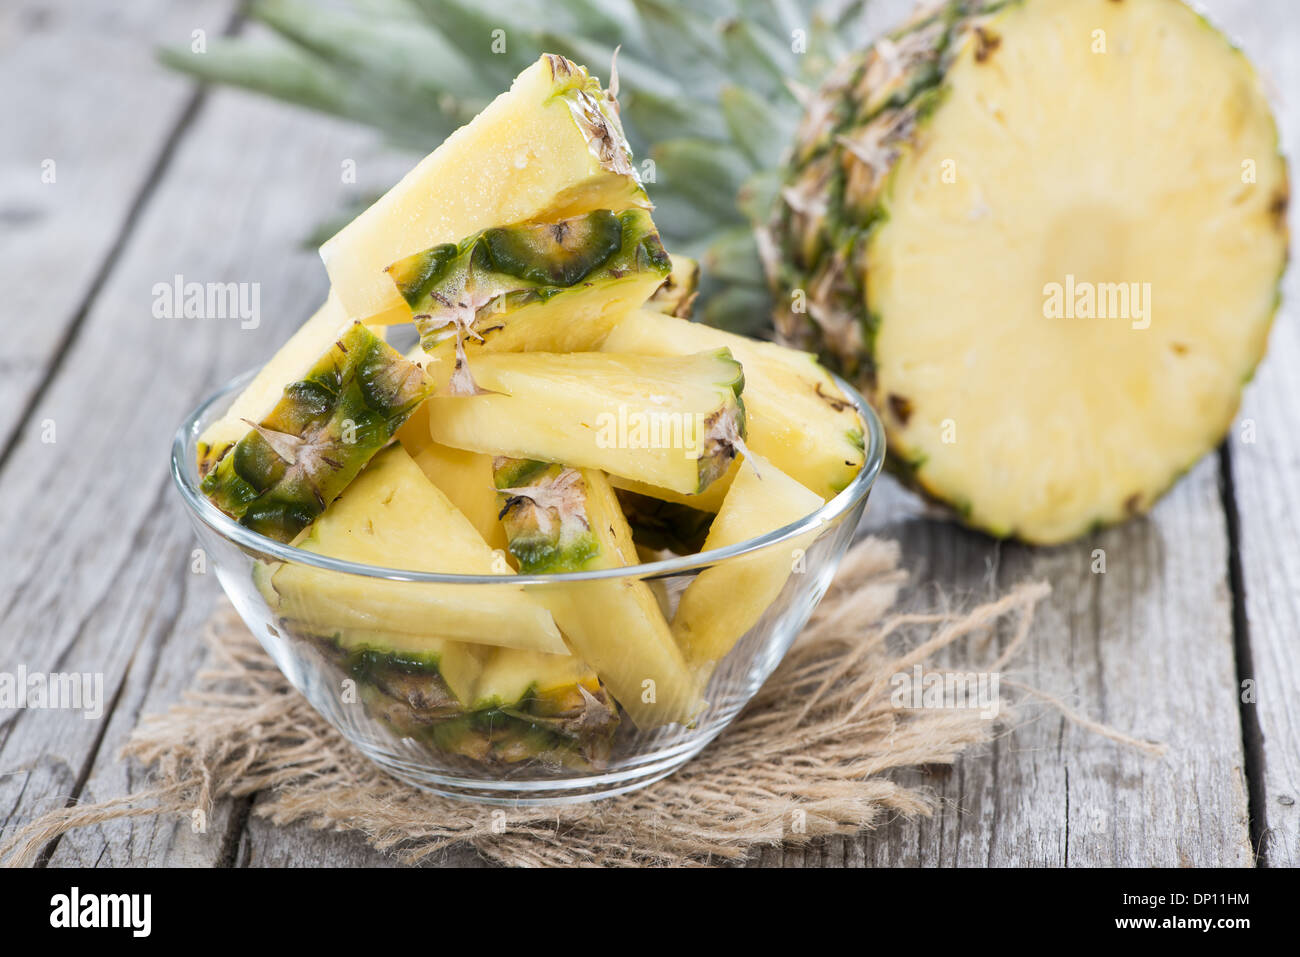 Ananasscheiben in einer Schüssel auf hölzernen Hintergrund (close-up erschossen) Stockfoto